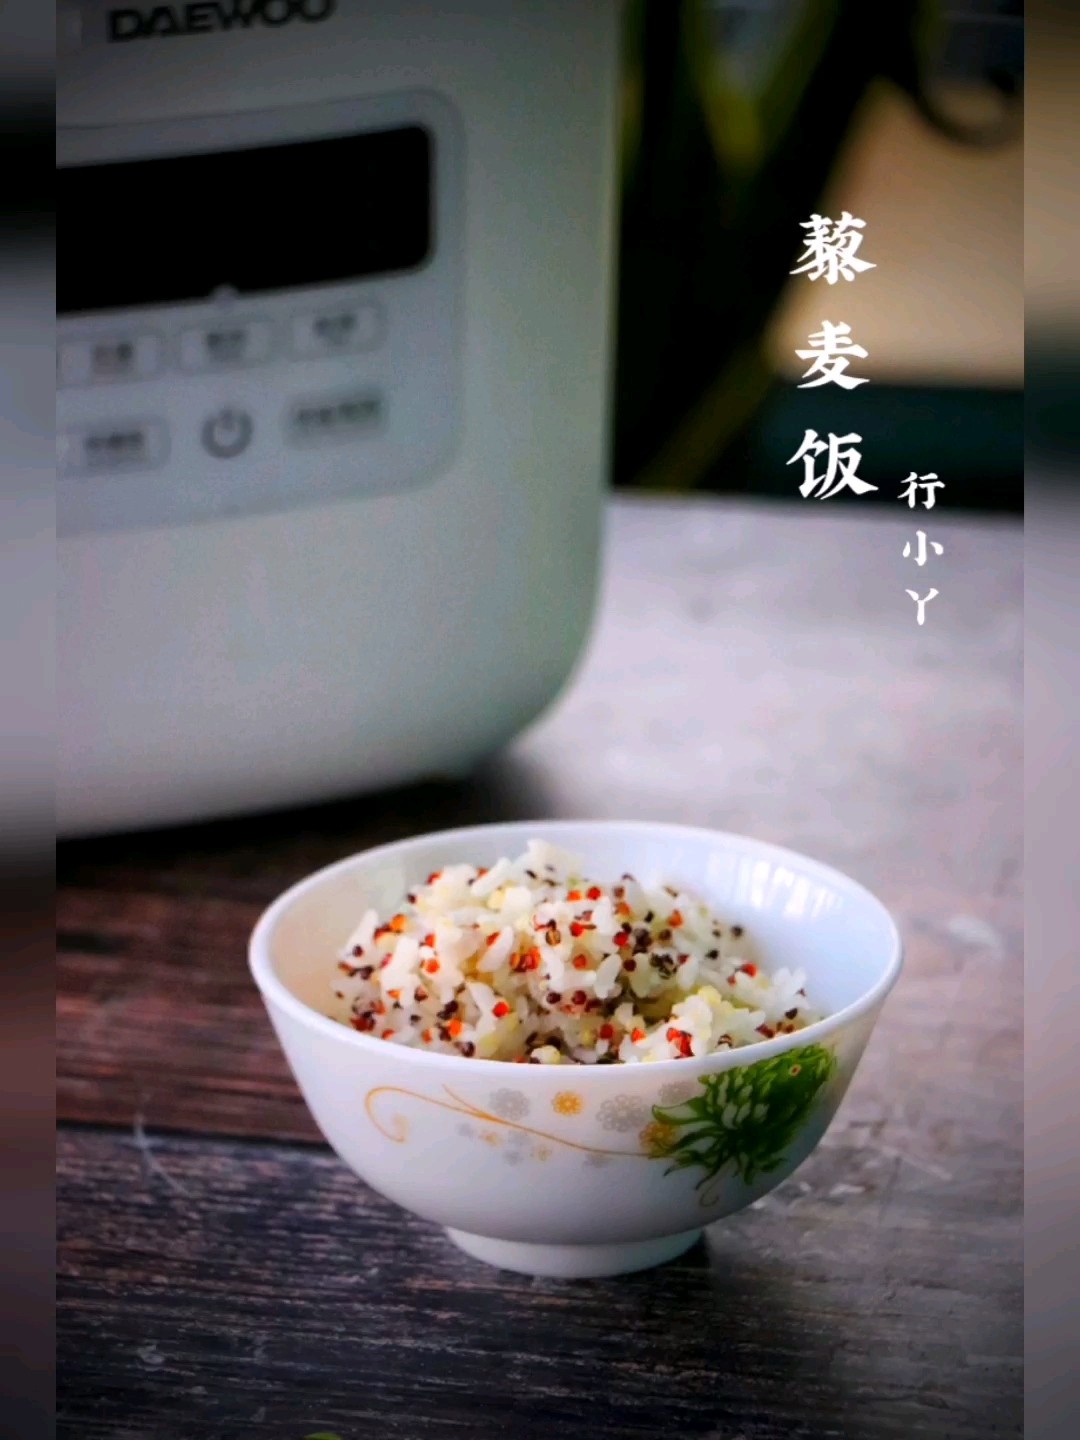 Tricolor Quinoa Rice recipe